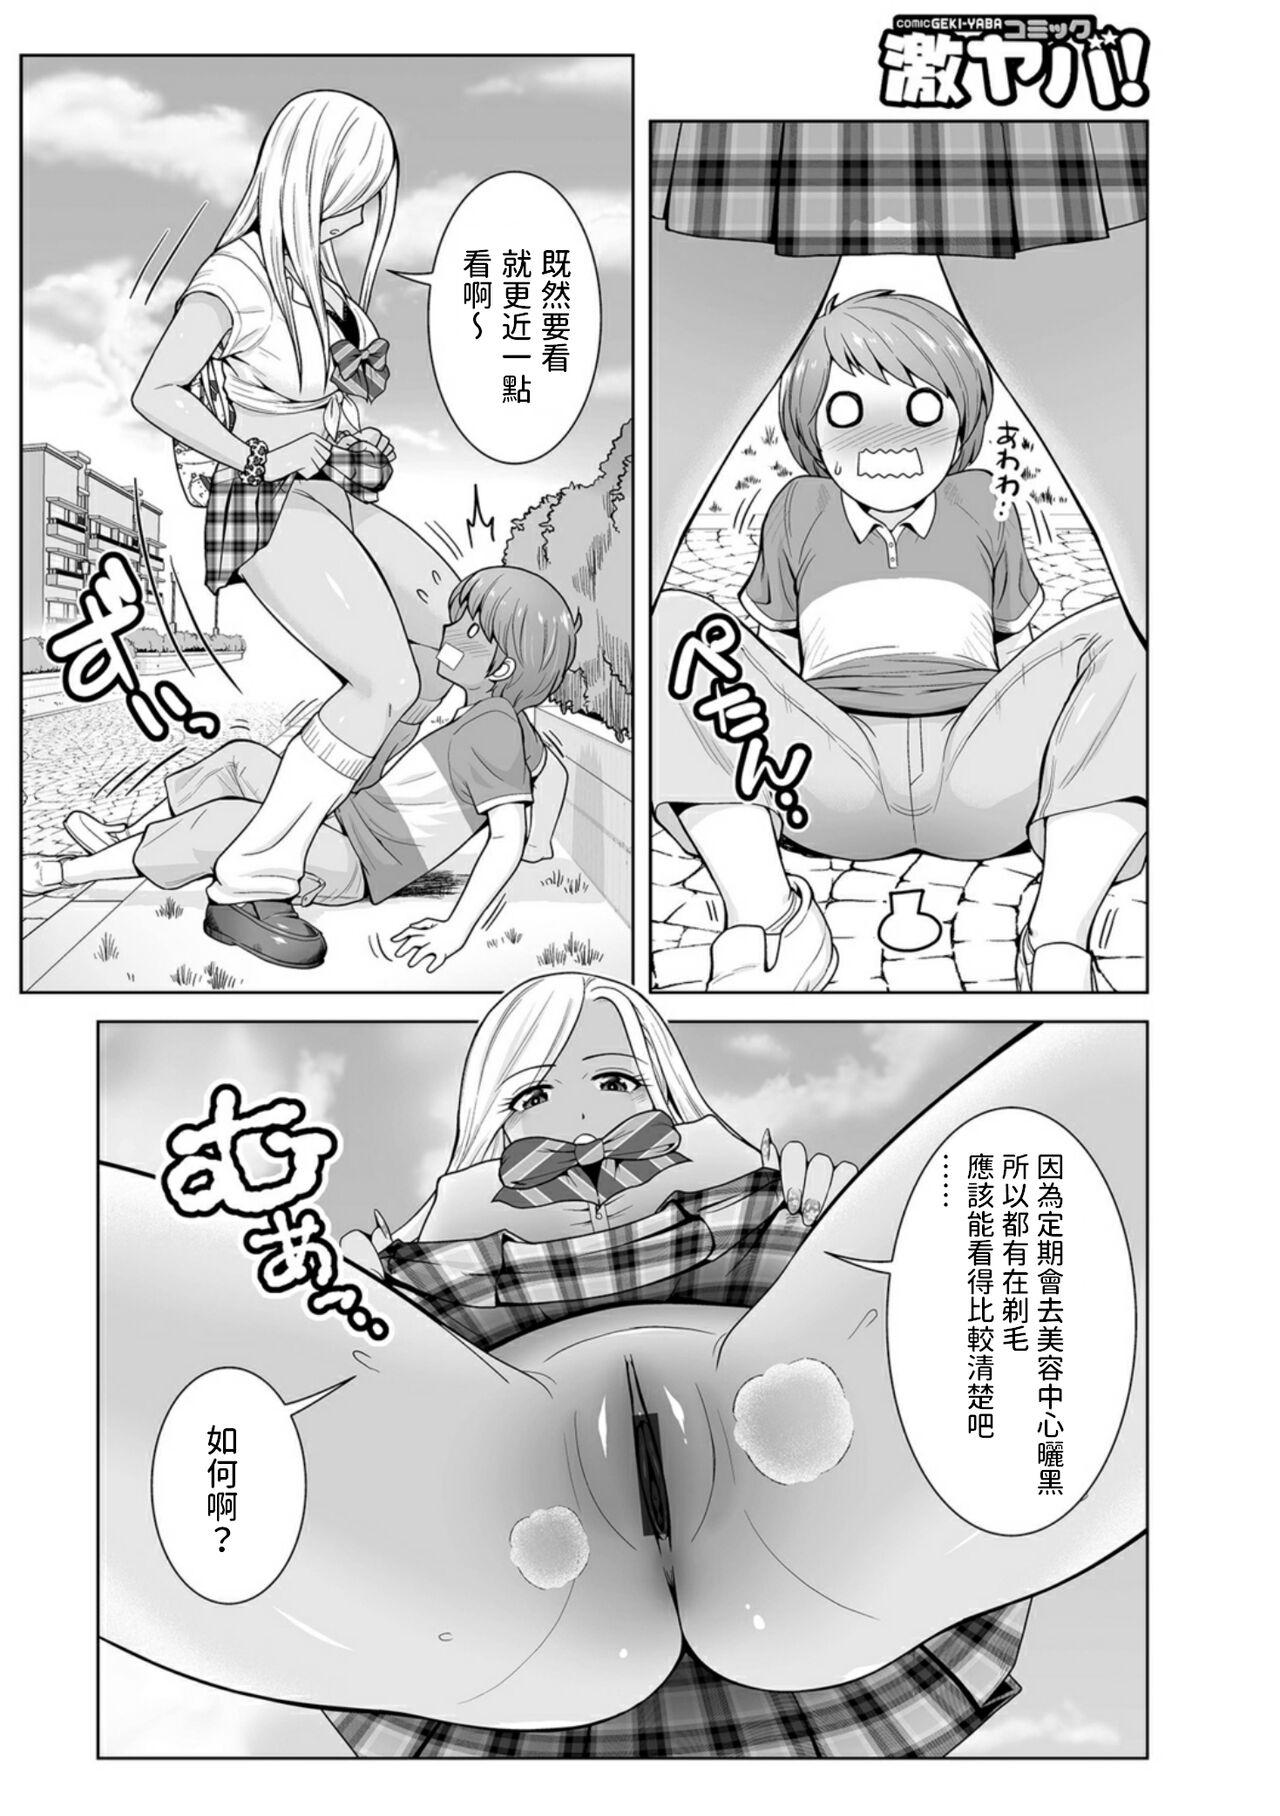 [ToWeR] ほんとはやさしい黒ギャルのお姉さん01  (WEB版コミック激ヤバ!166)  中文翻譯 3